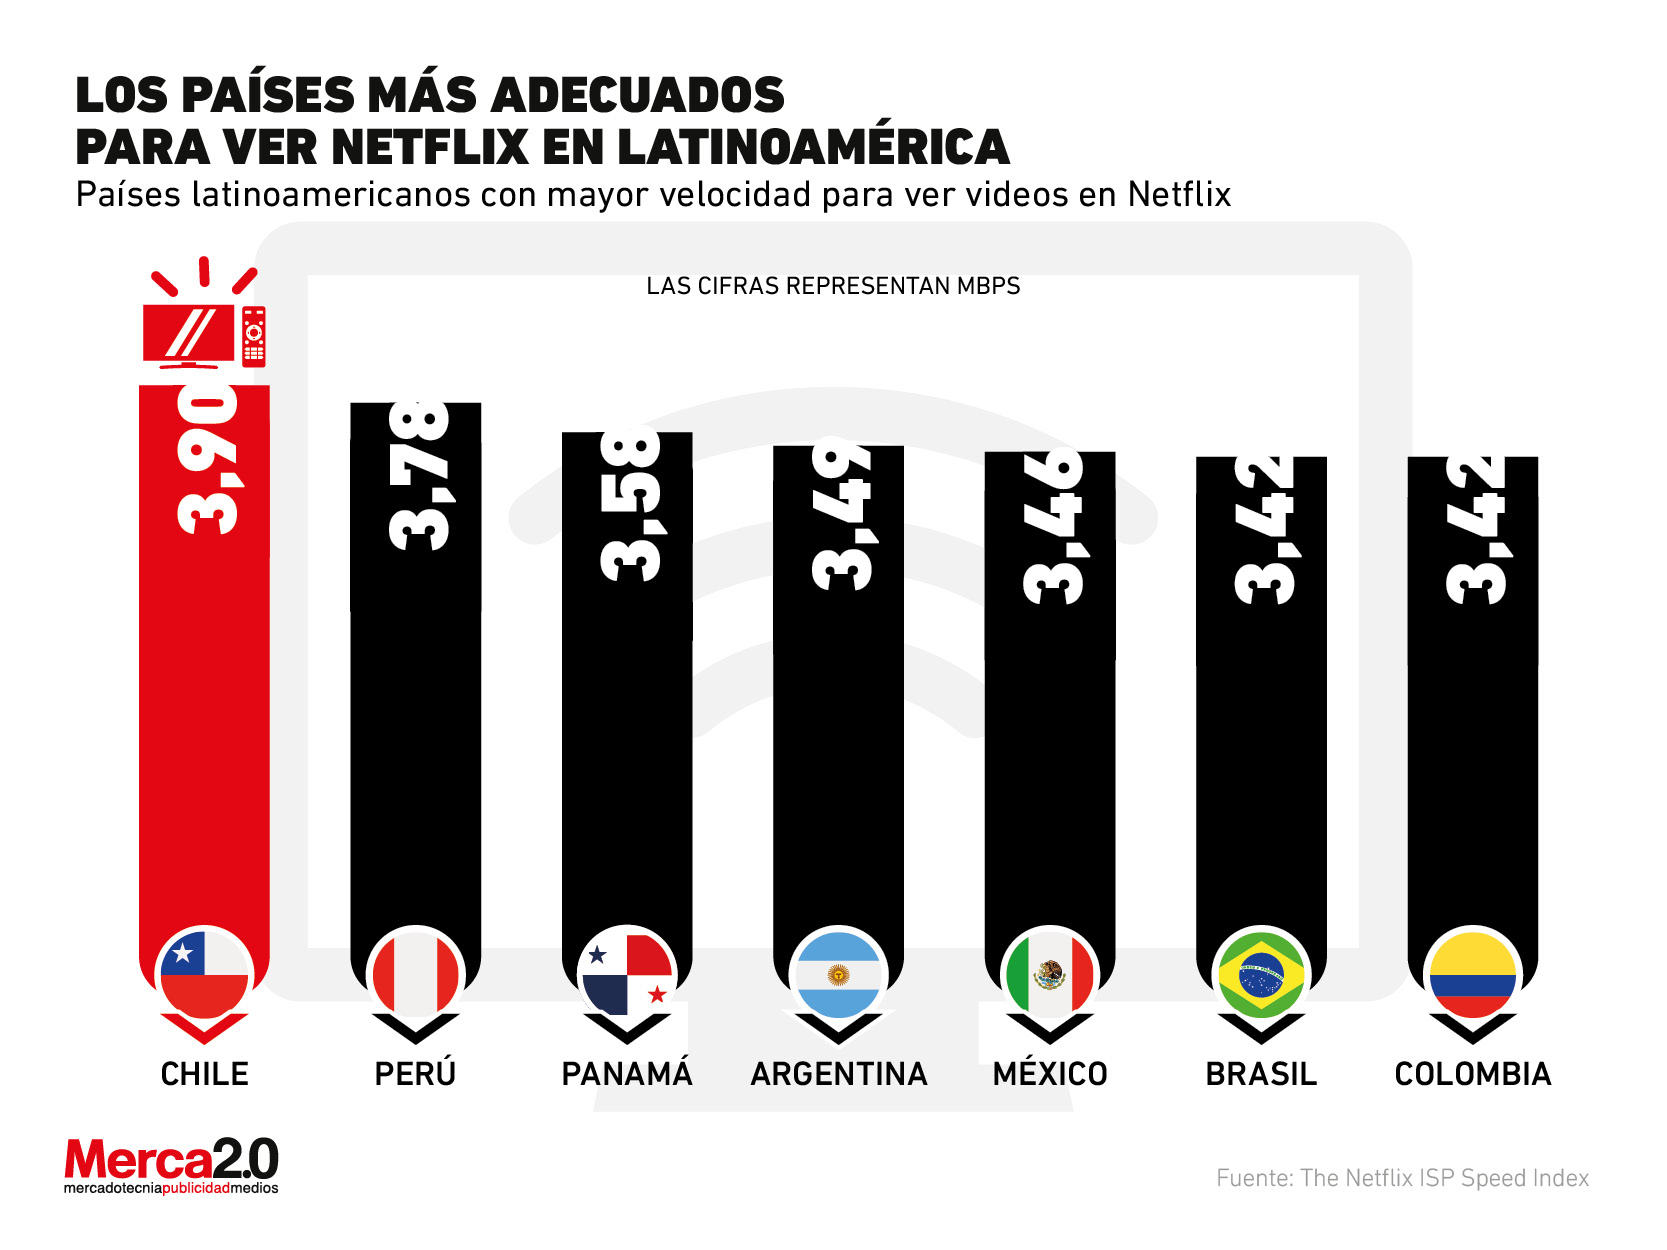 Estos son los países más adecuados de Latinoamérica para ver Netflix